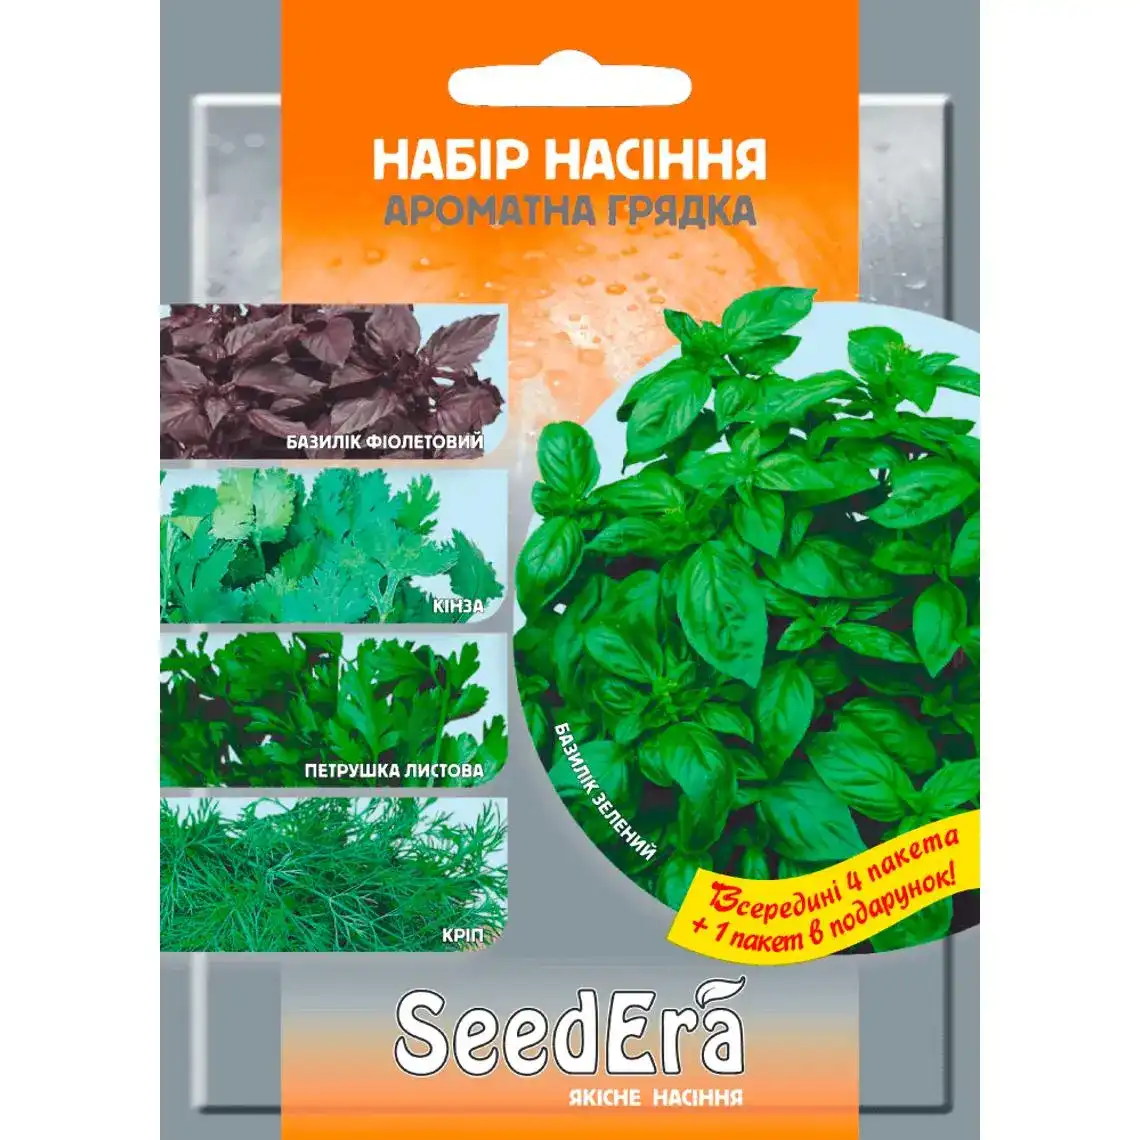 Набір насіння Seedera Ароматна грядка 4+1